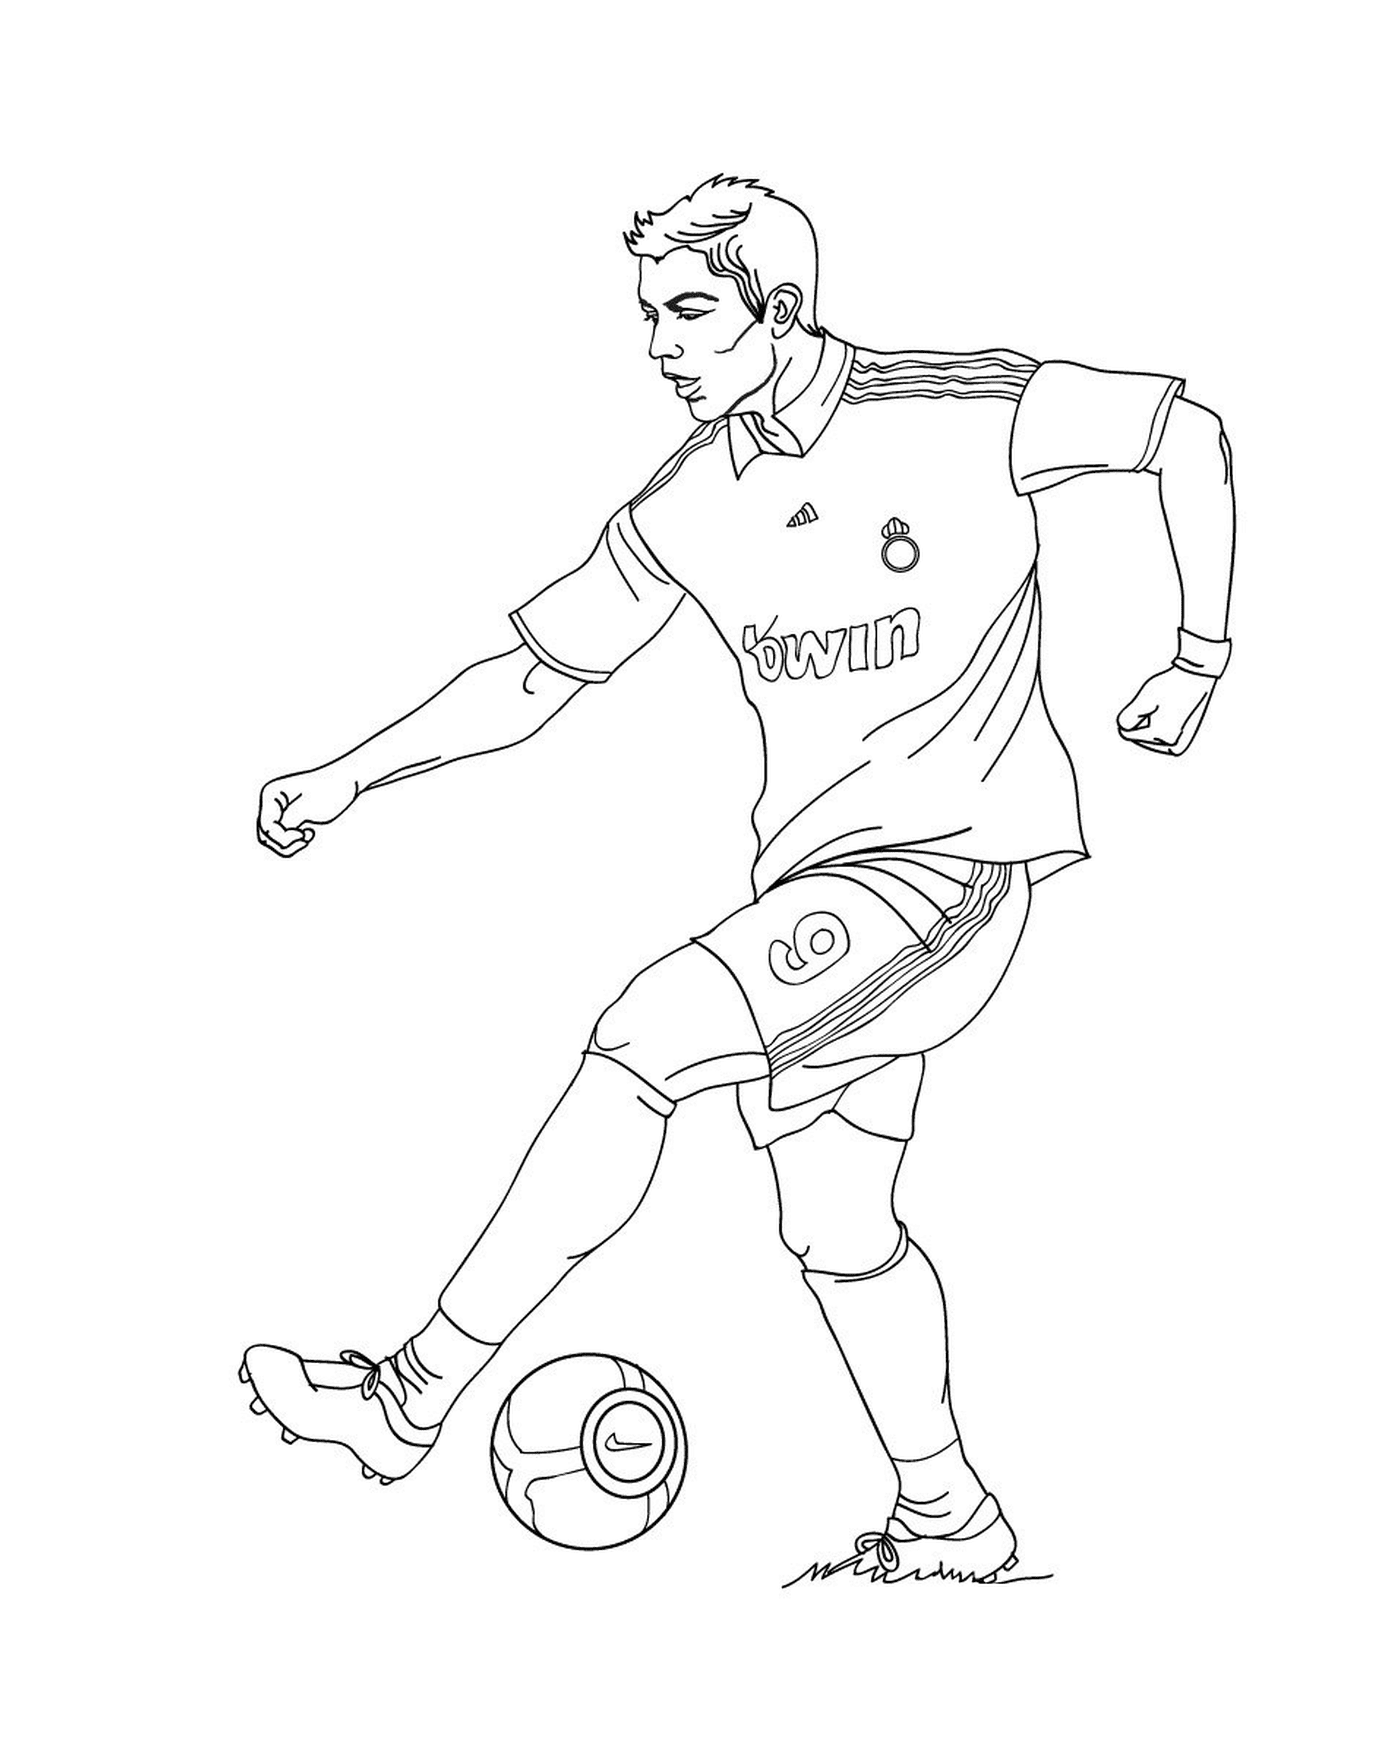   Un homme donnant un coup de pied dans un ballon de football sur un terrain 